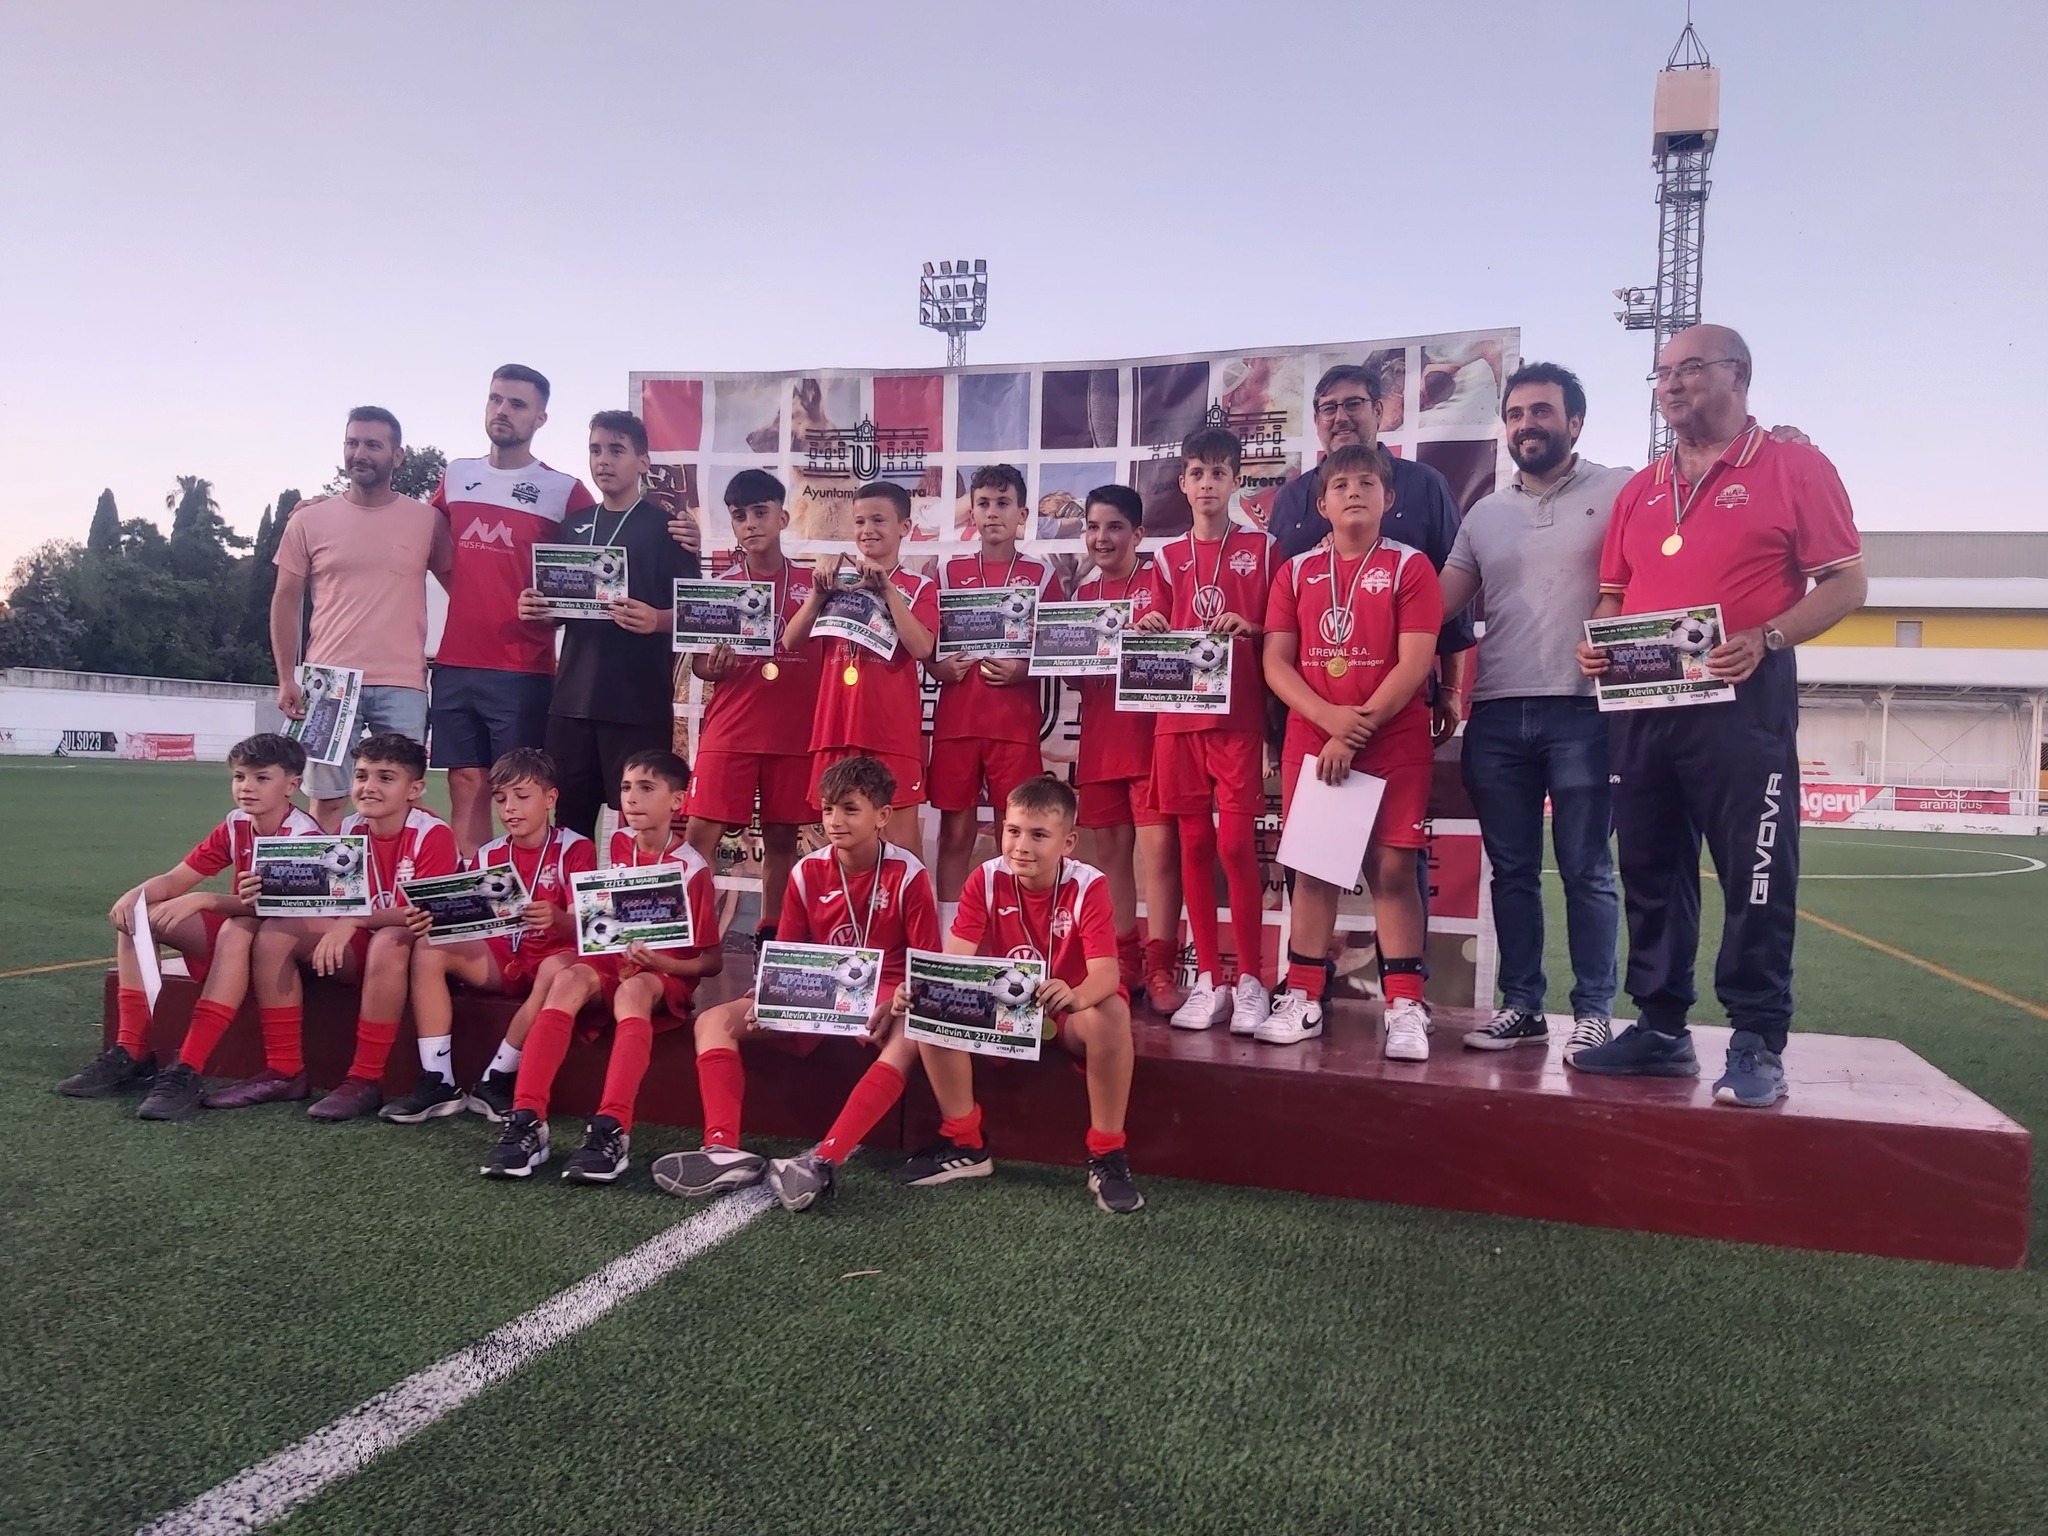 La escuela de fútbol de Utrera representará a la localidad en la 9º edición de la copa COVAP